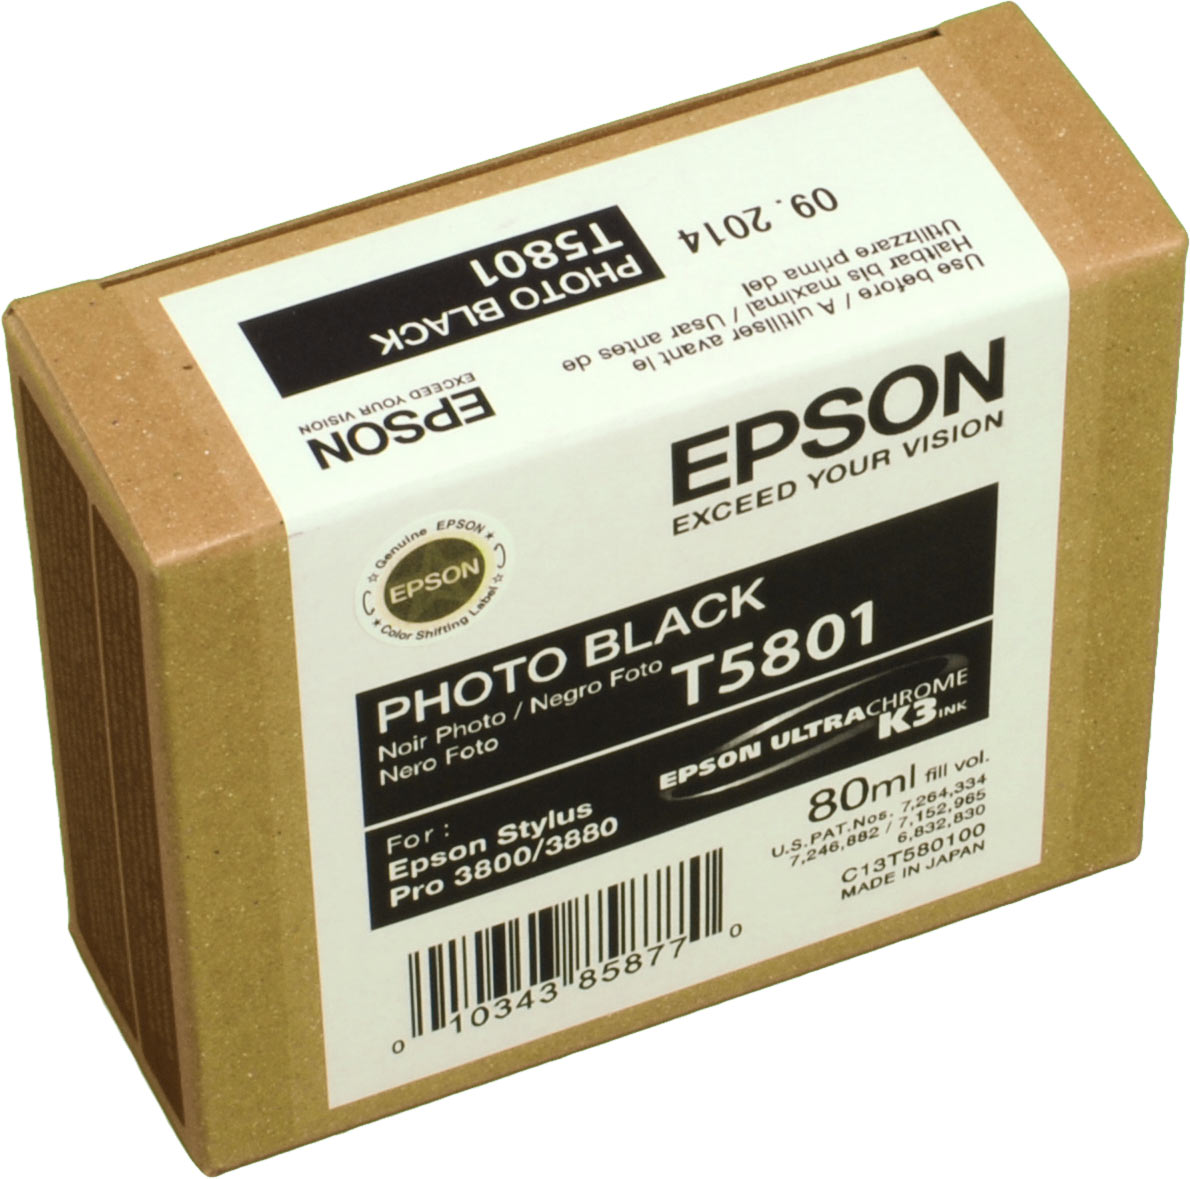 Epson Tinte C13T580100 photo schwarz